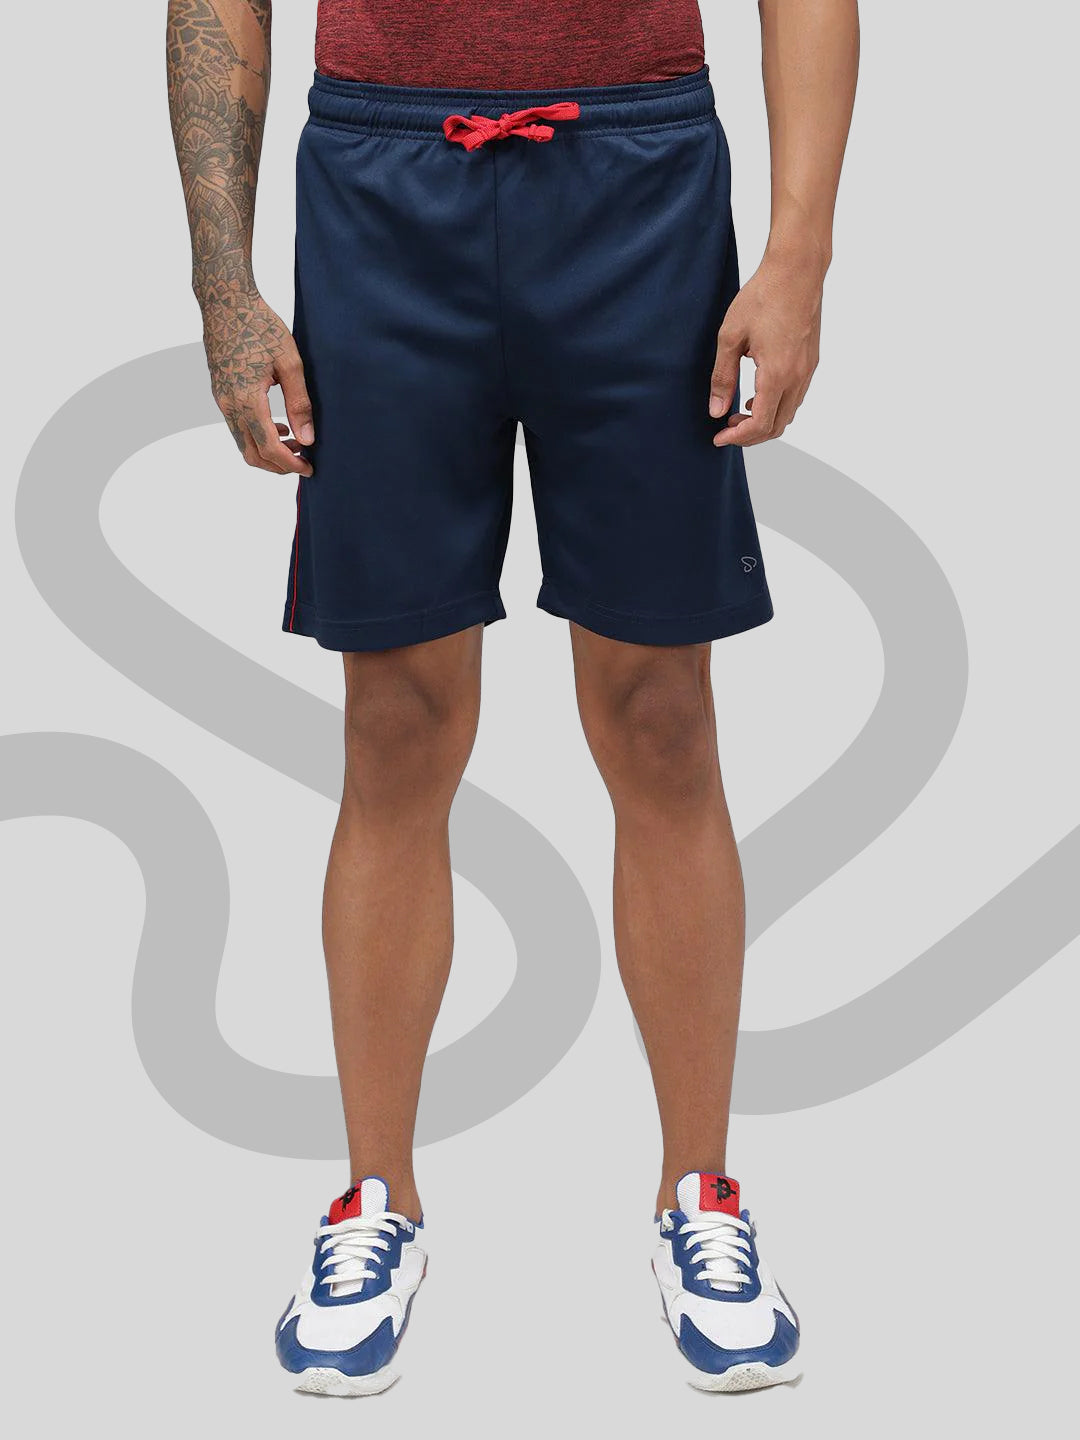 Sporto Men's Gym Athletic Bermuda Shorts - Navy